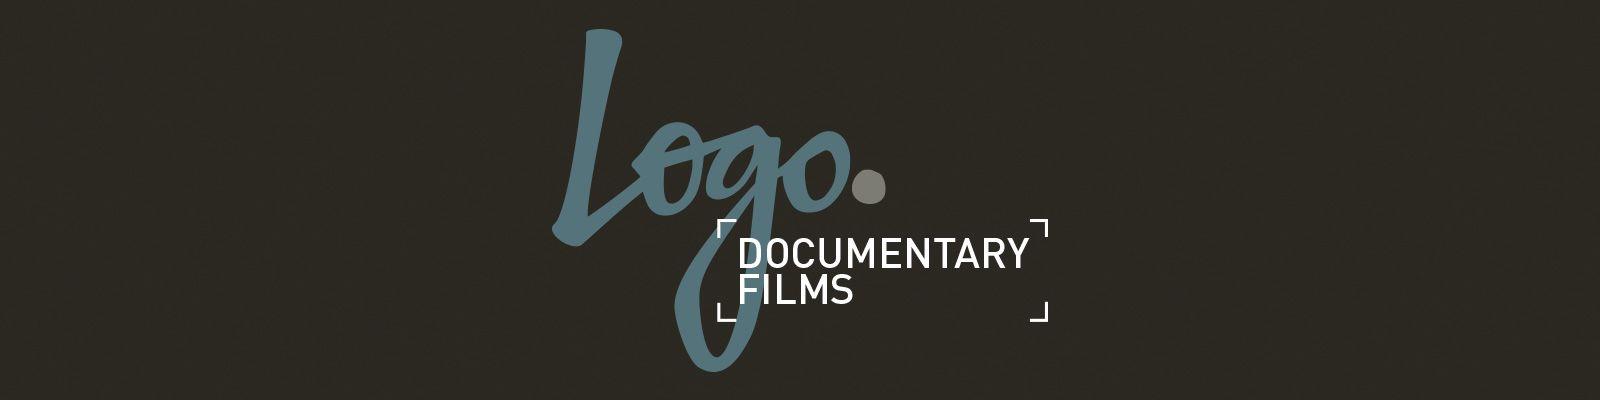 Films Logo - Logo Documentary Films | Episodes (TV Series) | LOGOtv.com